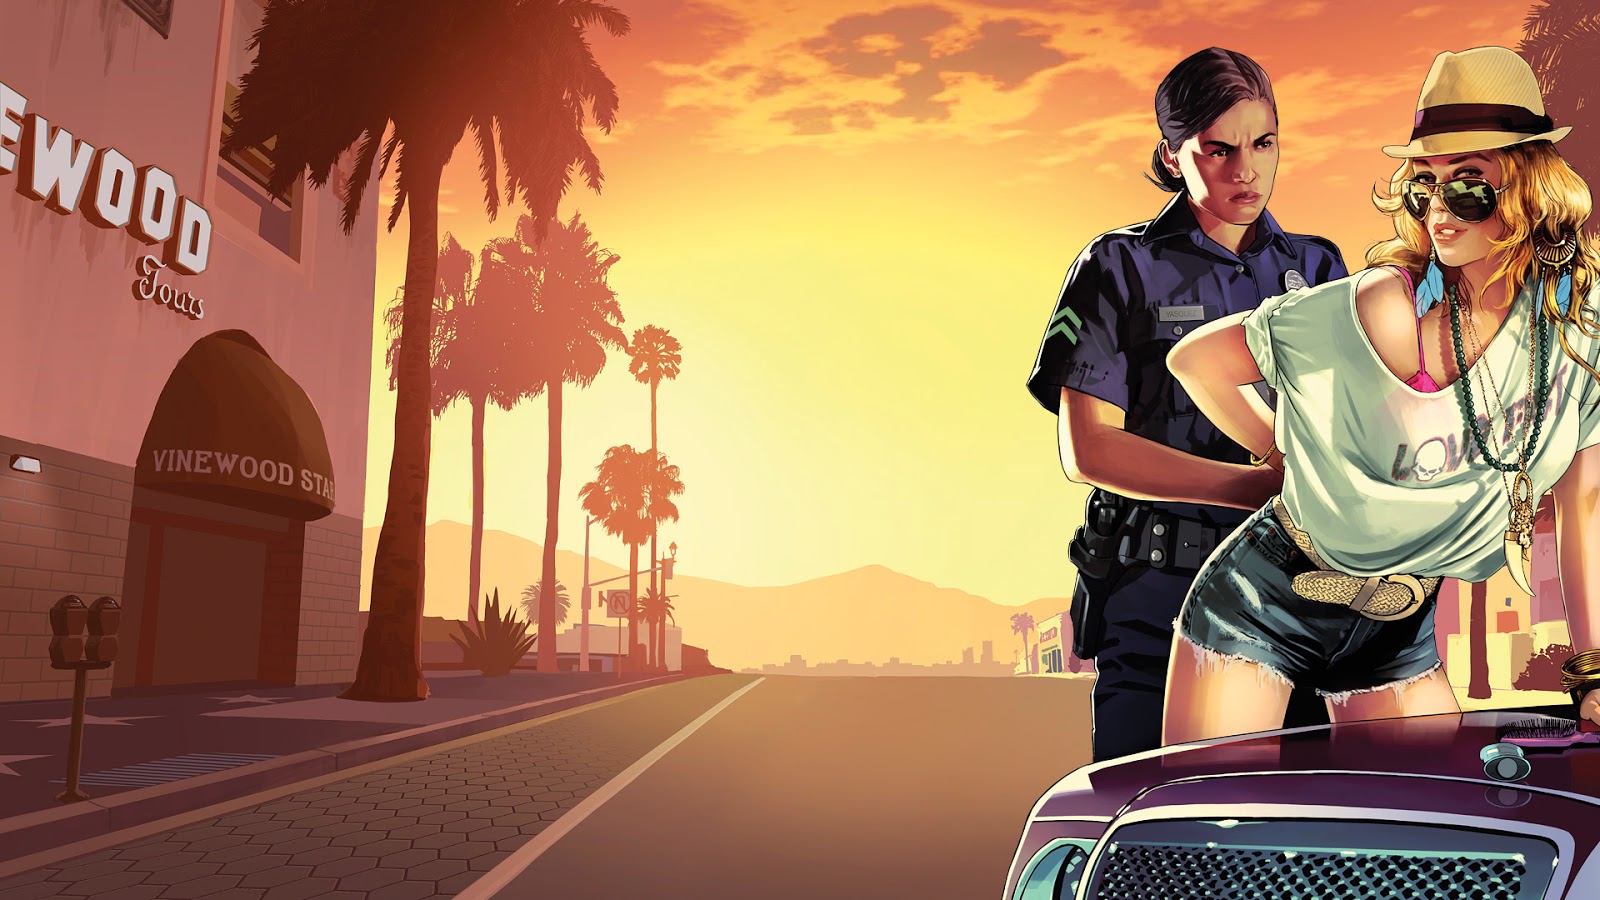 Grand Theft Auto V - một trong những game thế giới mở được yêu thích nhất trên thế giới. Nếu bạn là một fan cứng của trò chơi này, thì hãy xem những hình ảnh đẹp mắt cùng với những chi tiết tuyệt vời của thế giới mở của GTA V.